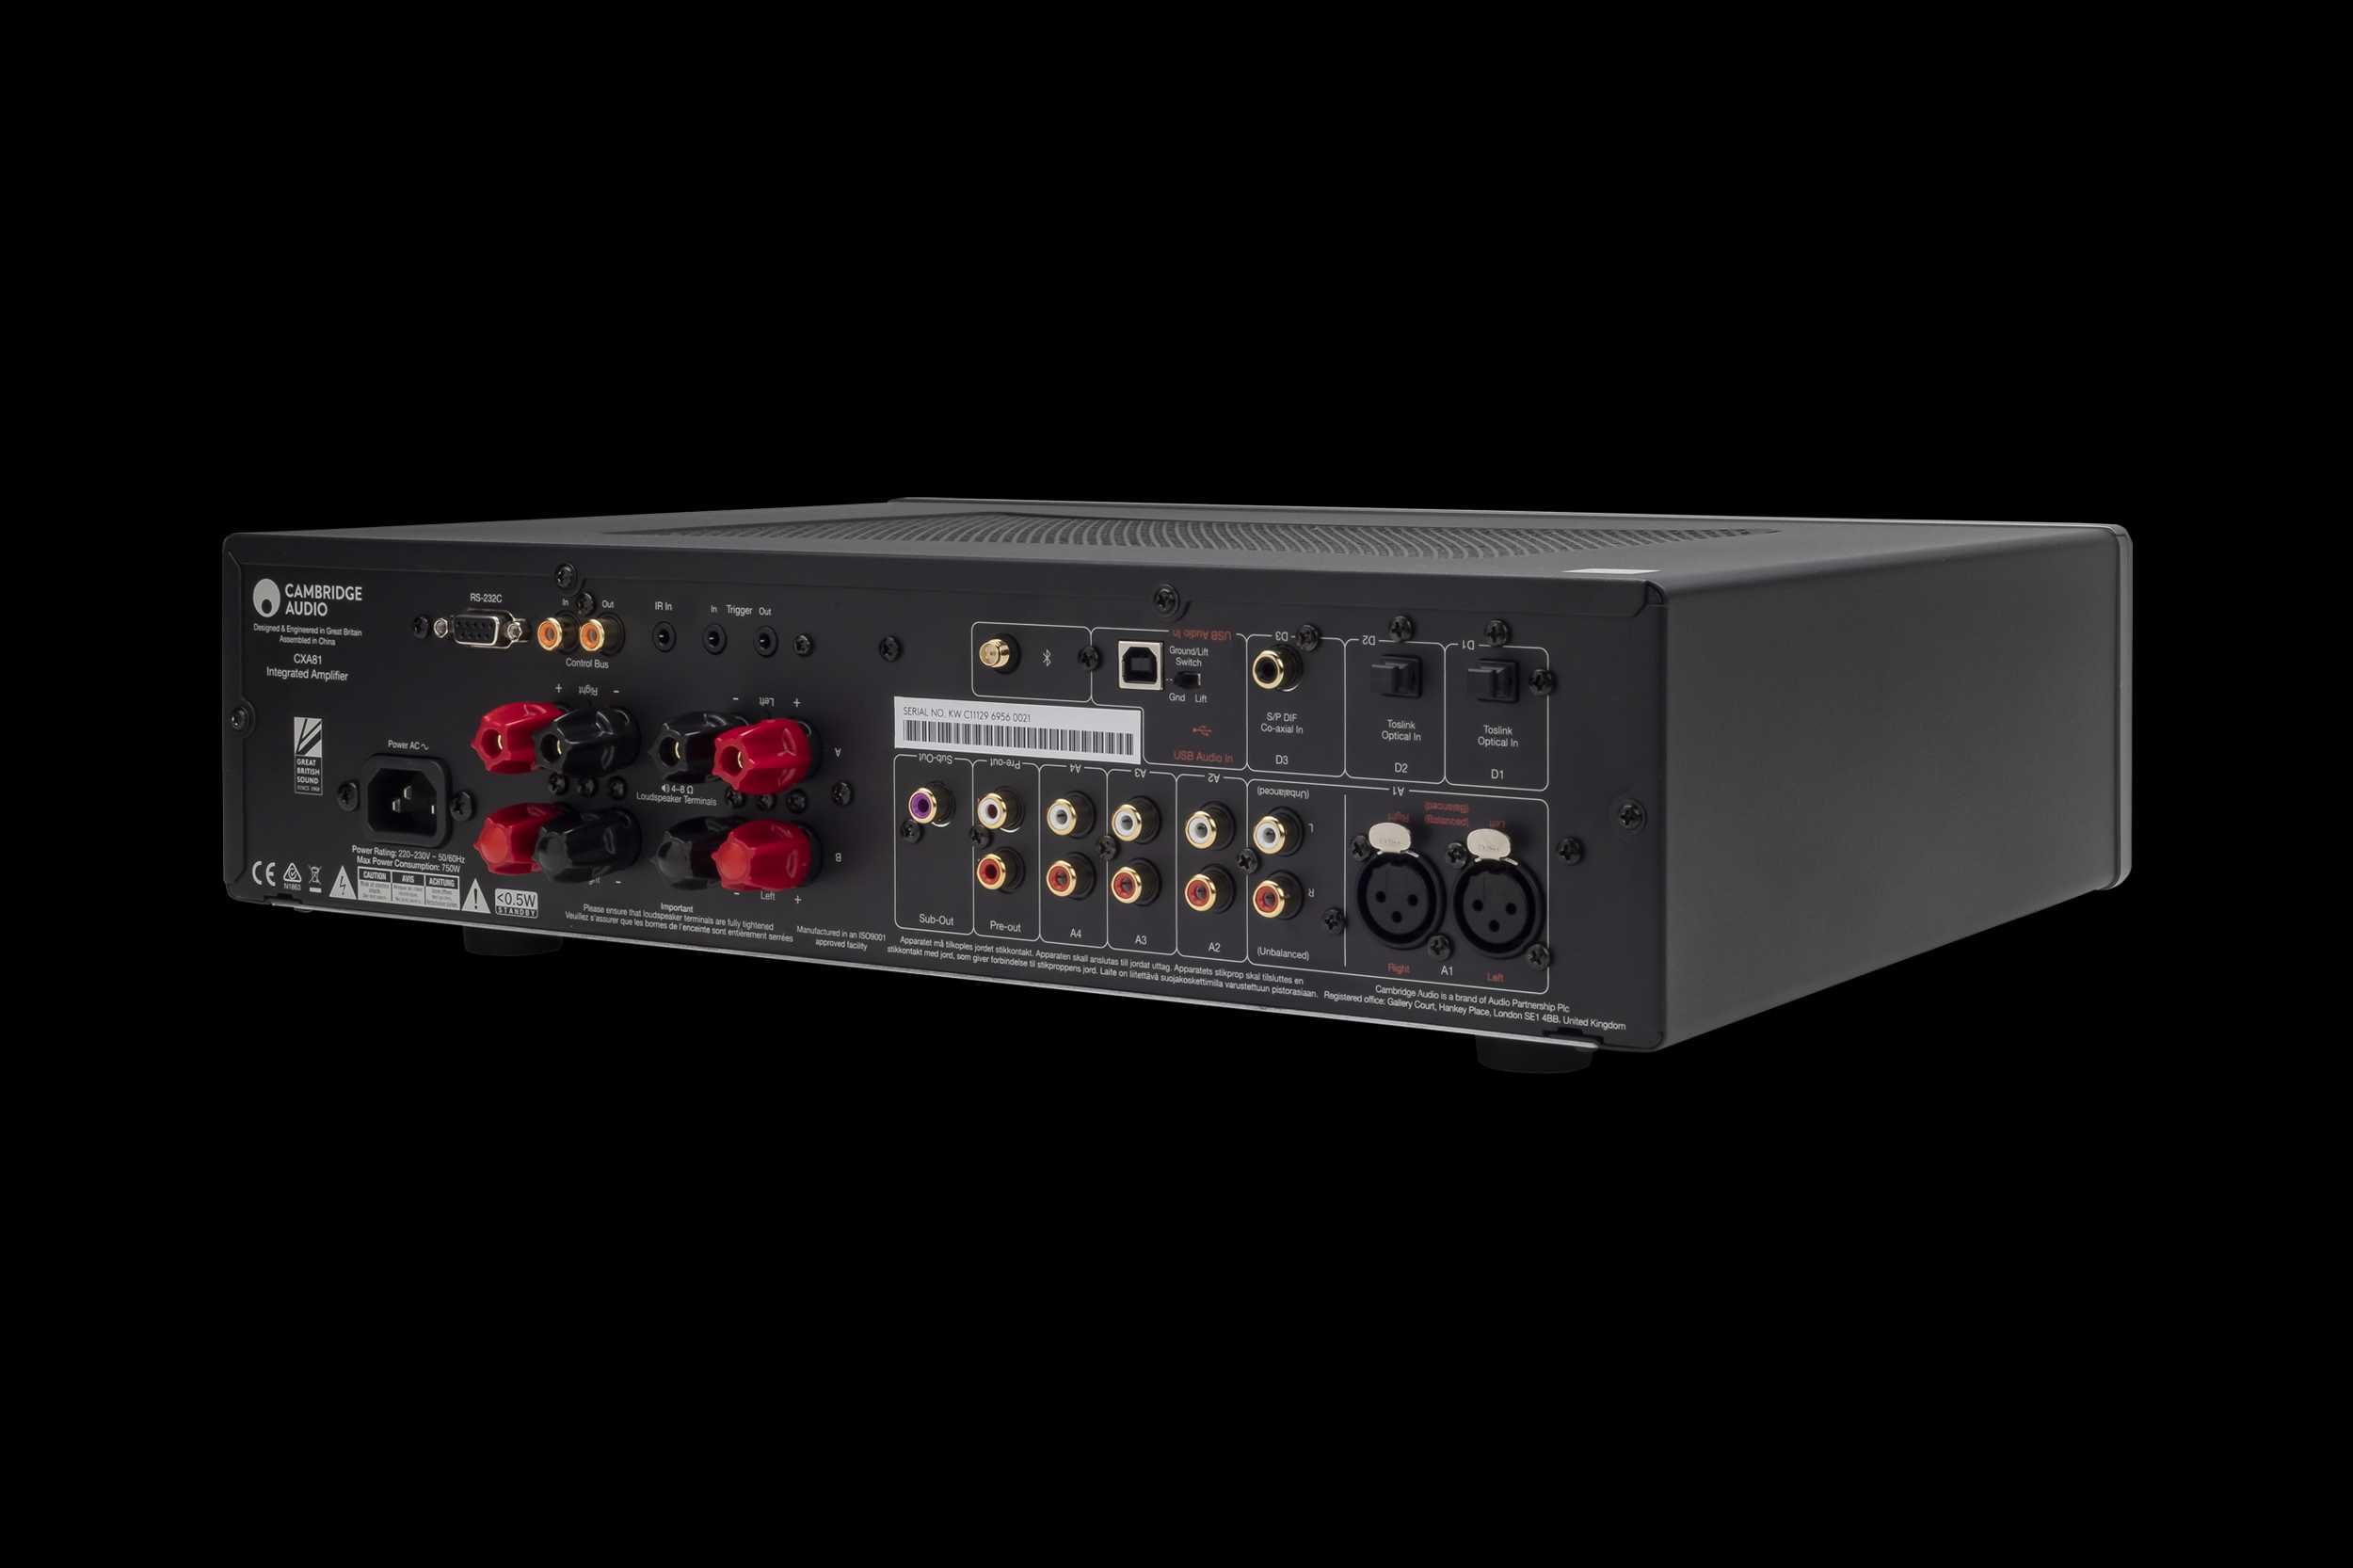 Cambridge Audio CXA81 підсилювач